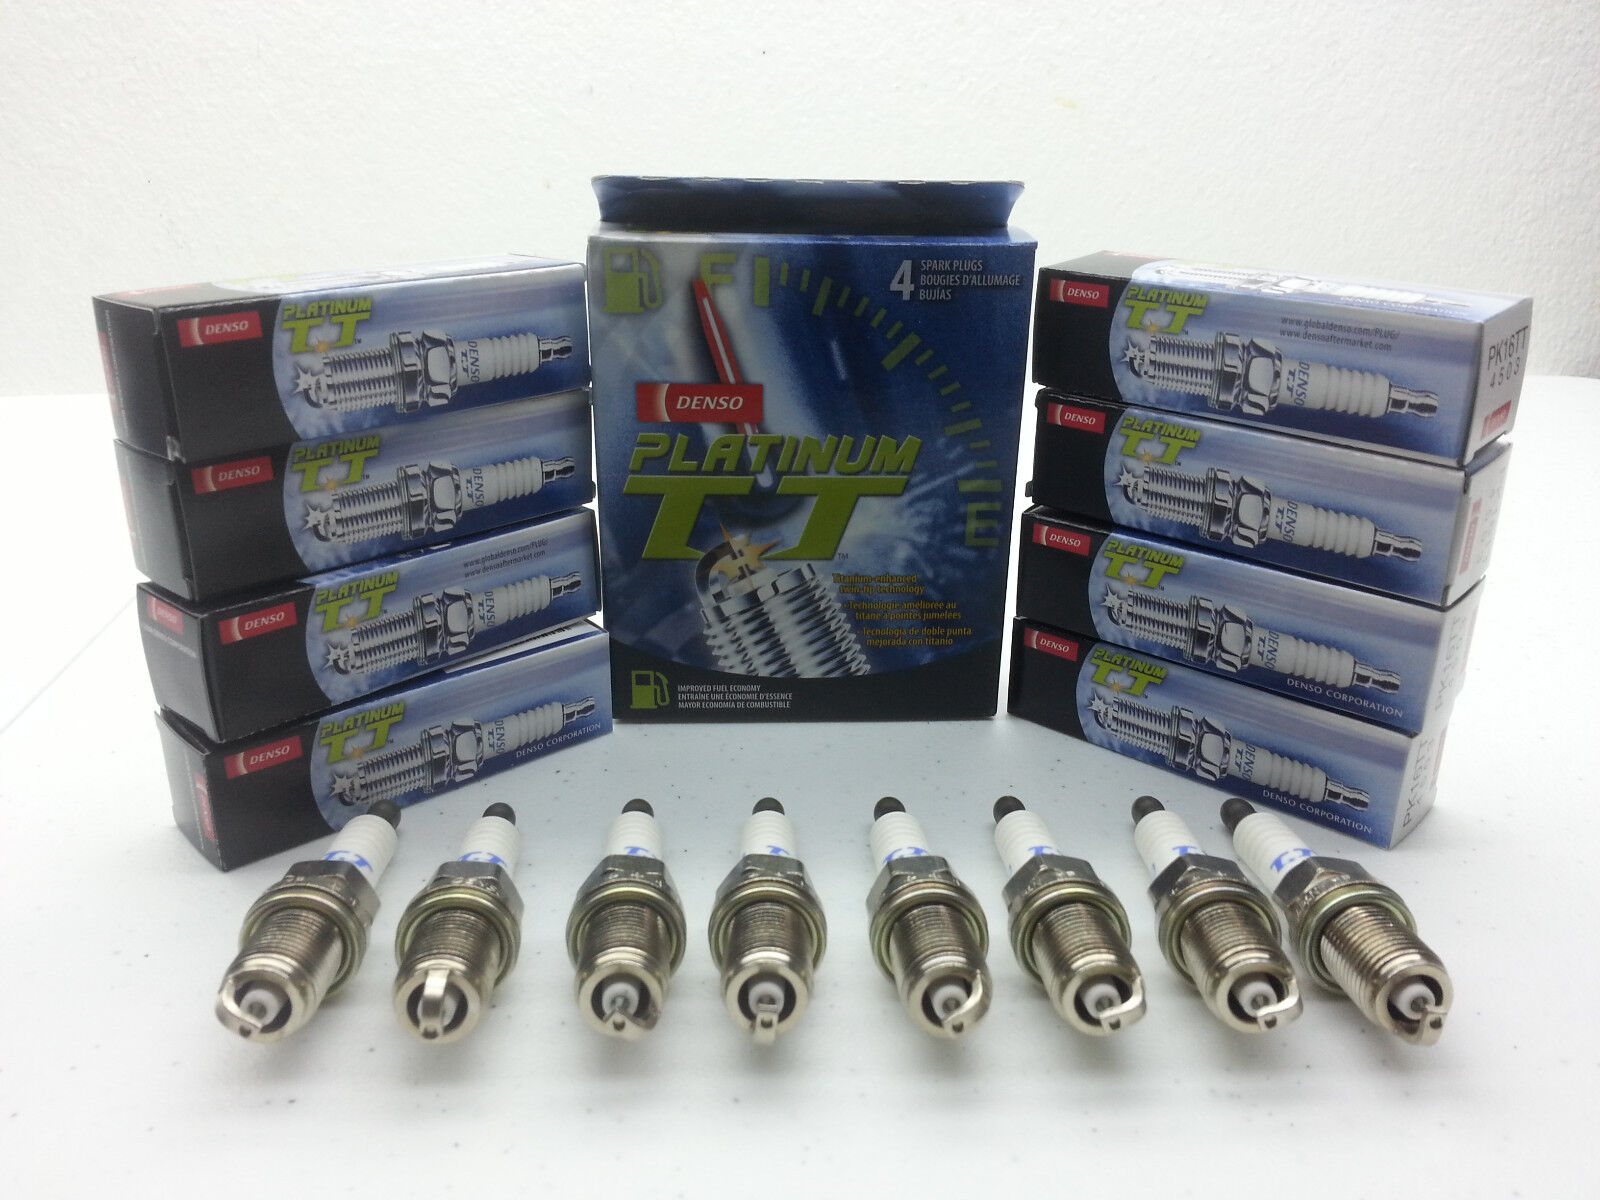 8x DENSO PT16TT Platinum Titanium TT Spark Plug set Pre-Gapped More Spark/Power